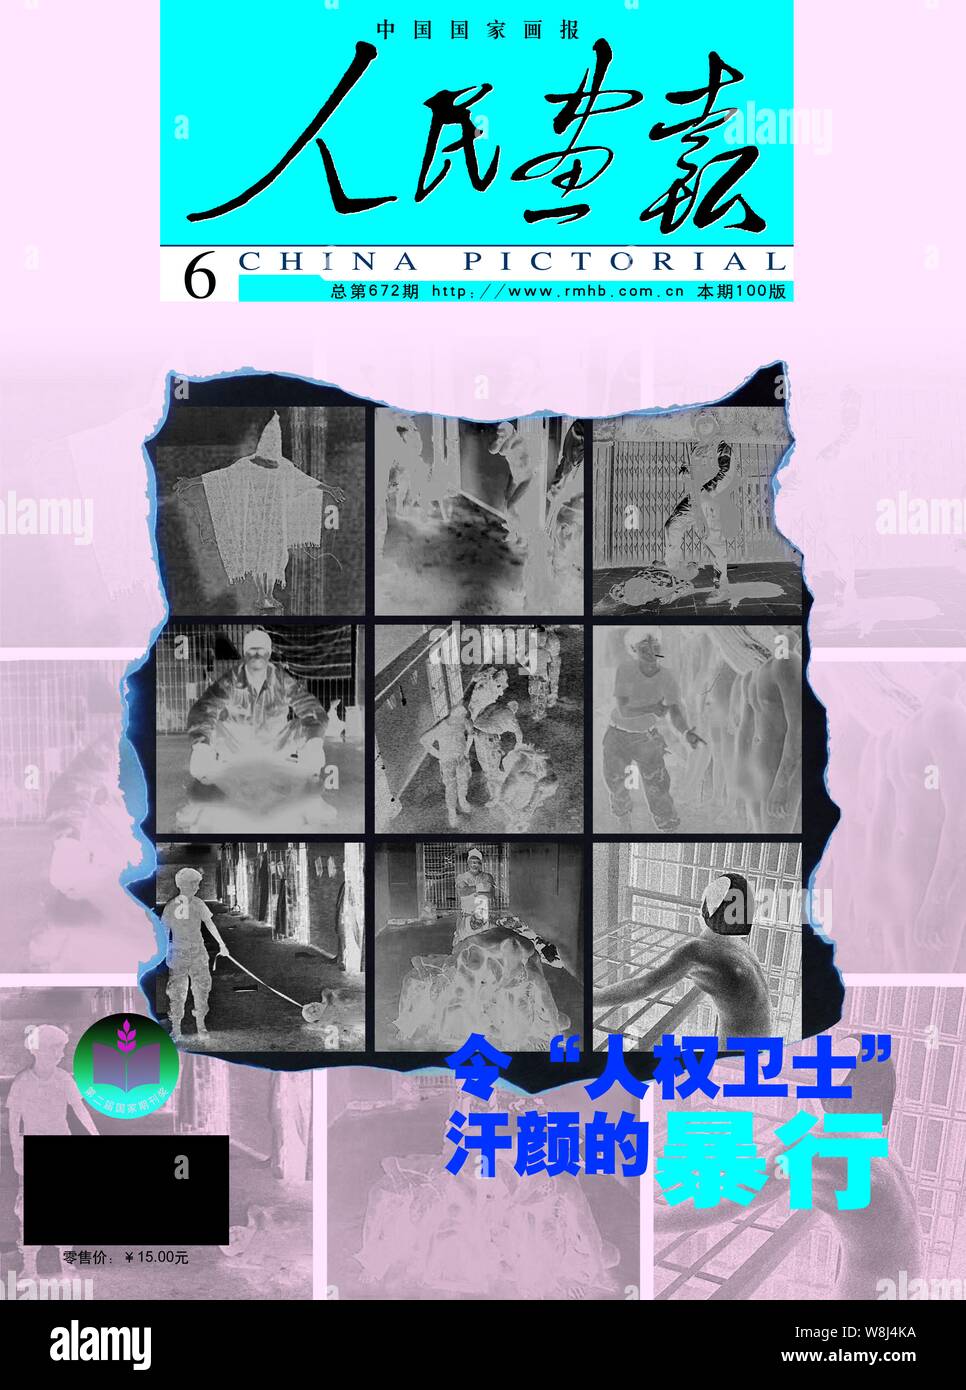 Questo coperchio della Cina rilasciati pittorico nel giugno 2004 caratteristiche screenshots di cattura iracheno sia oggetto di abusi da parte di soldati americani ad Abu Ghraib carcere, ho Foto Stock